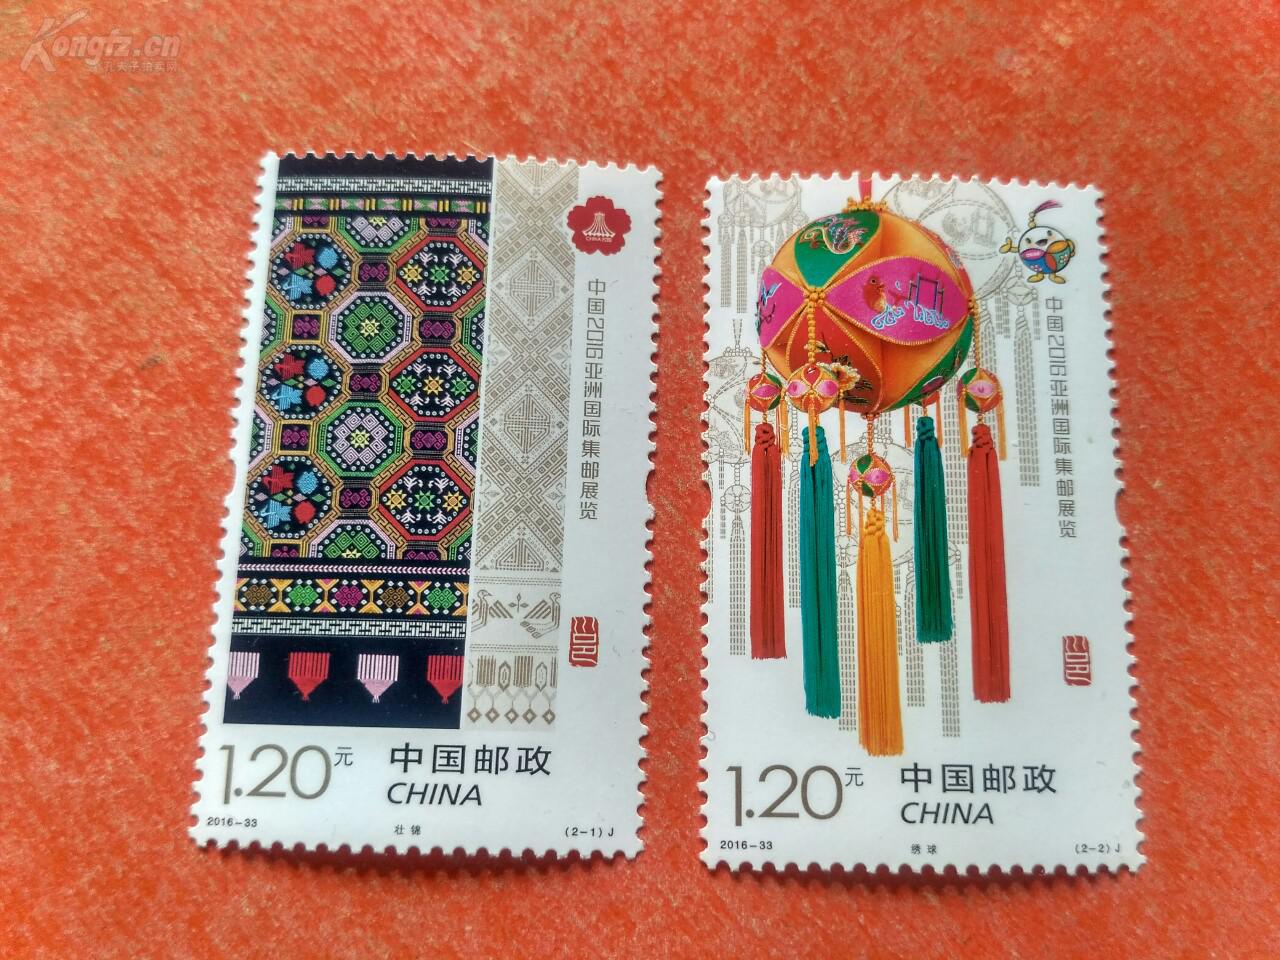 2016～33亚洲邮展新票一套